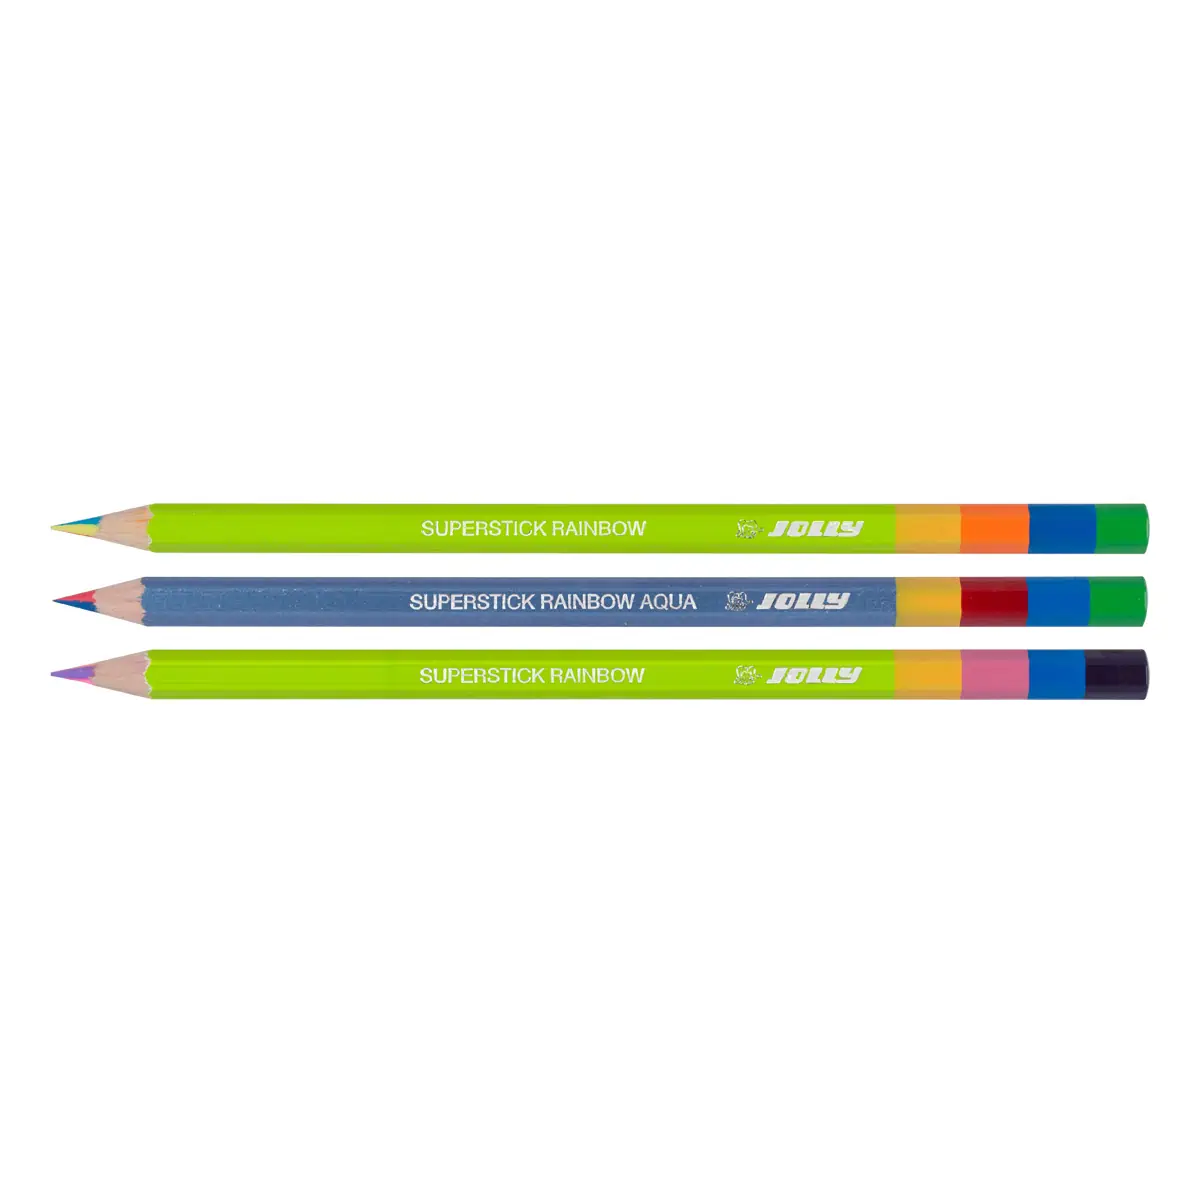 Creioane colorate cu mina curcubeu mina groasarezistent la spargerecorp din lemn rezistentculoare deosebit de bogat&259;distrac&539;ie de pictur&259; de lung&259; durat&259;pentru efecte cool de curcubeu2 creioane curcubeu clasice plus un creion solubil în ap&259;